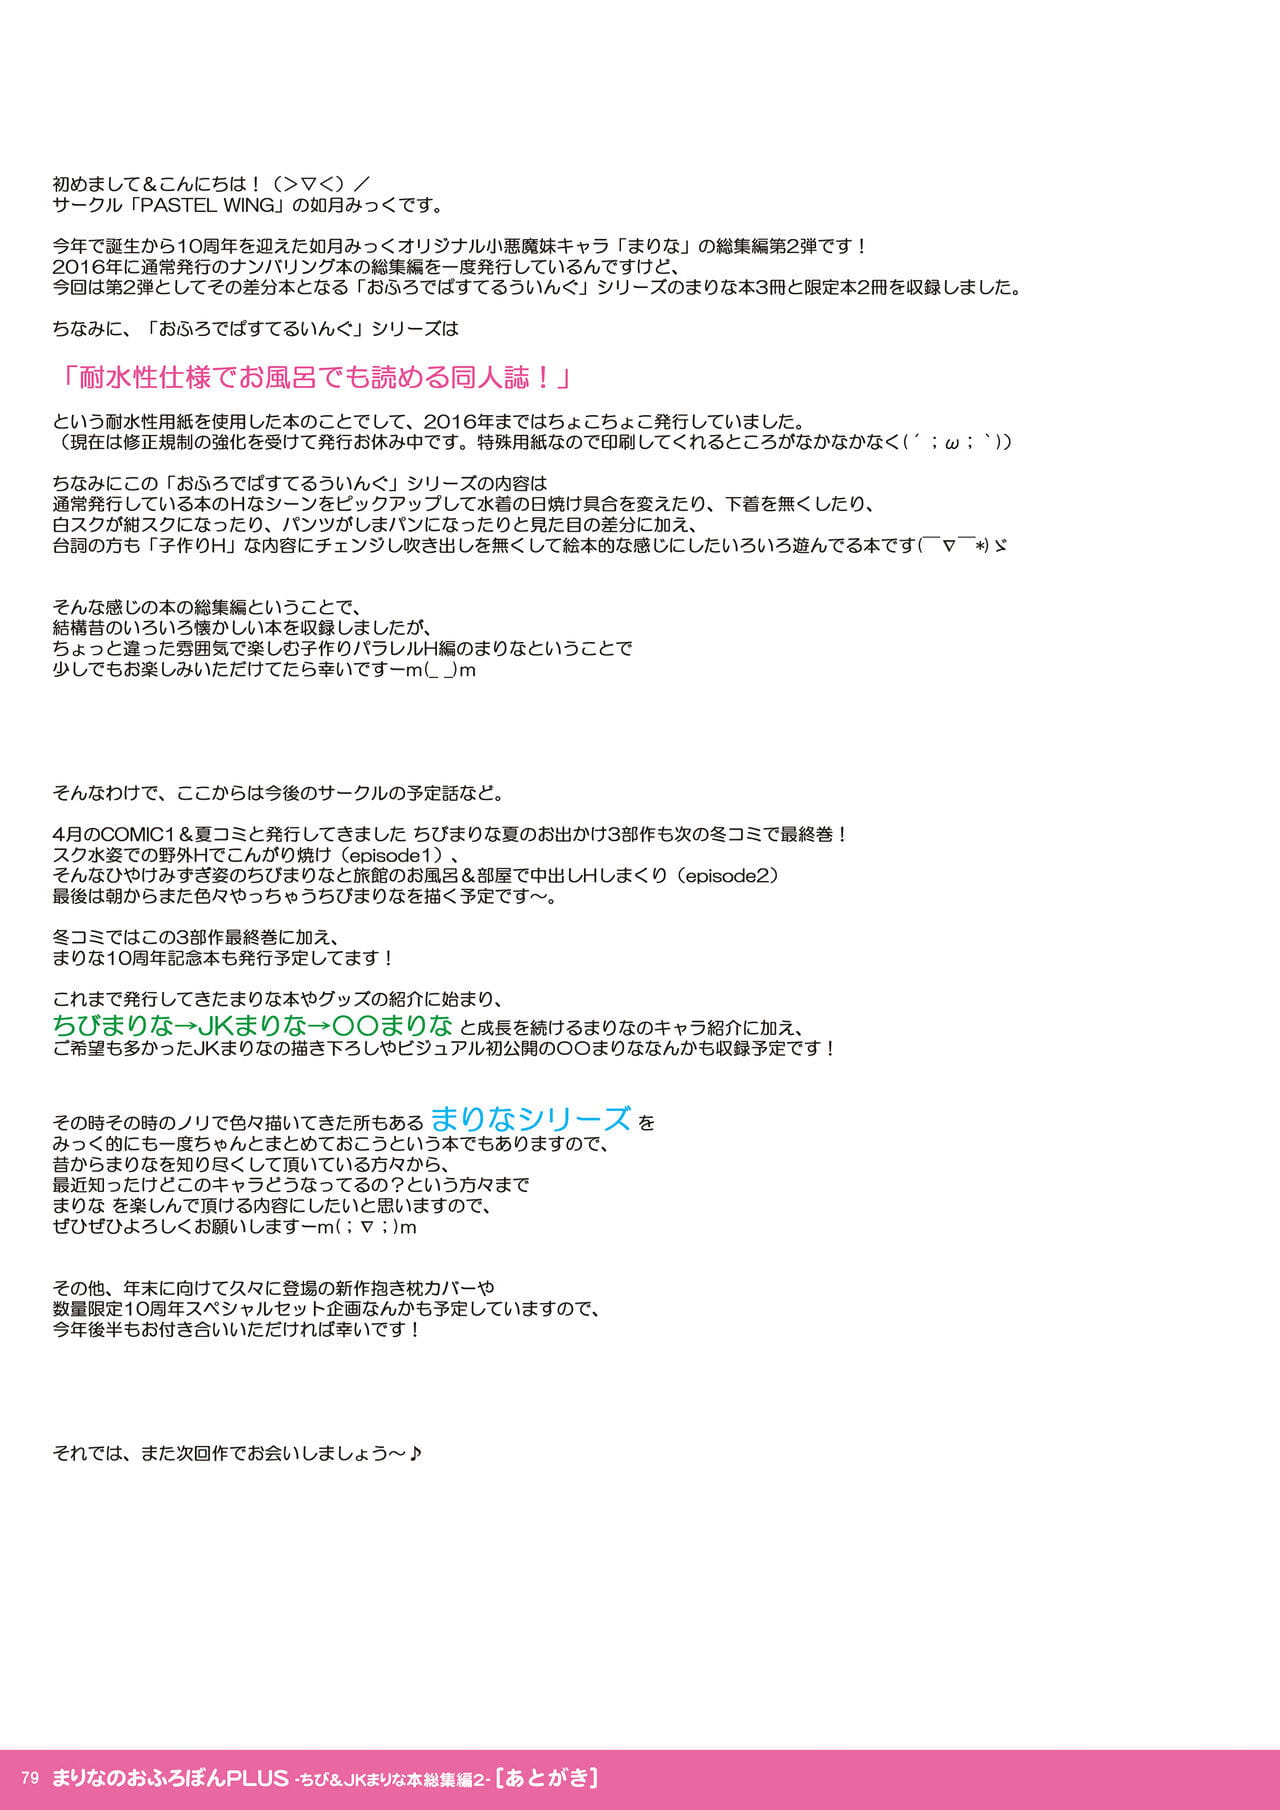 PASTEL WING Kisaragi-MIC Colorful Marina Parfait -Chibi & JK Marina Hon Soushuuhen 2- - part 4